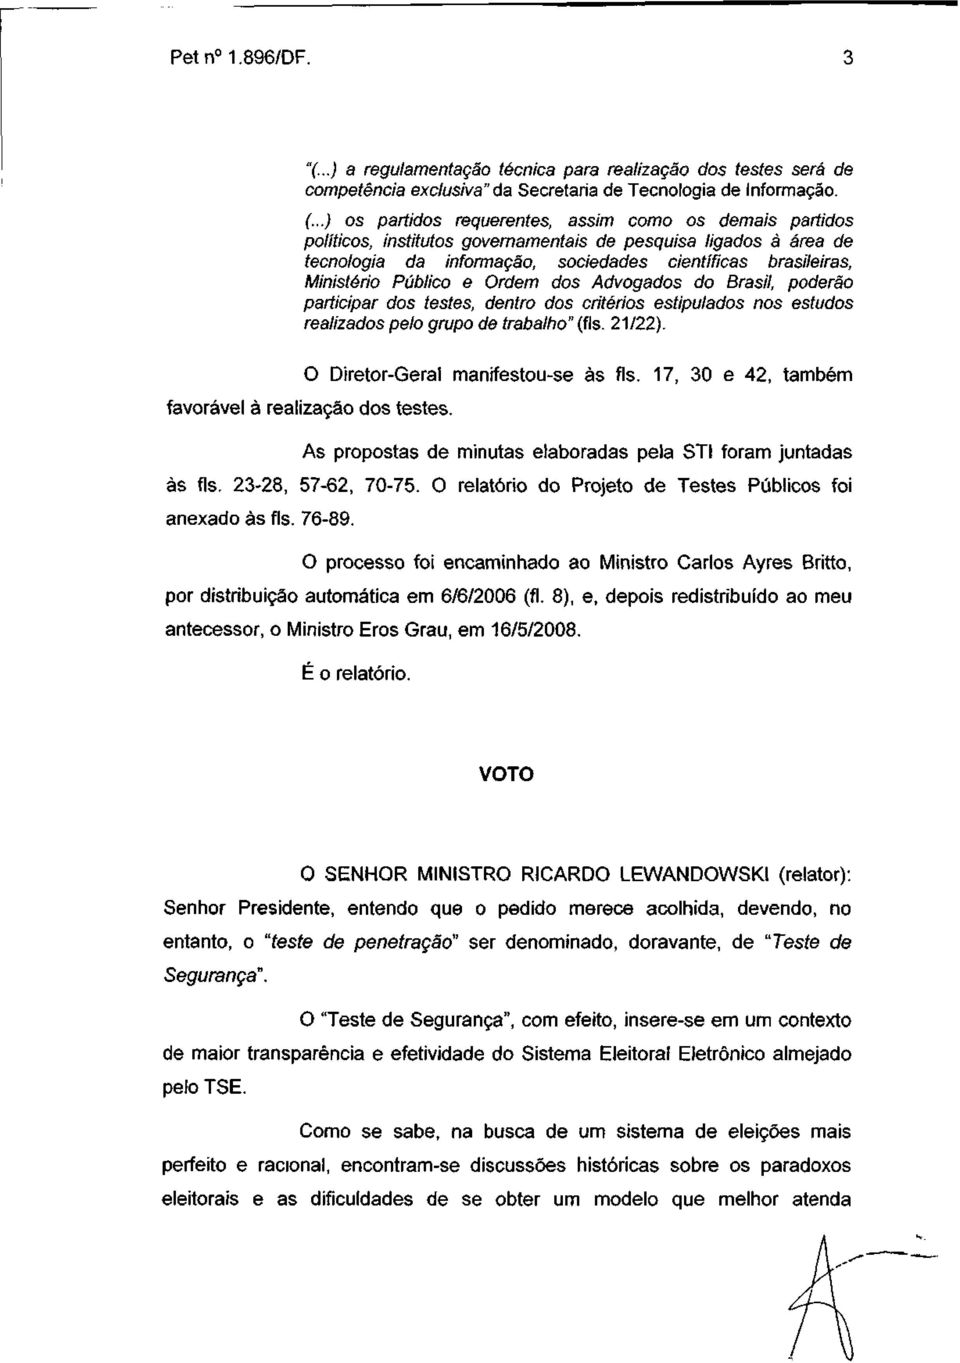 Público e Ordem dos Advogados do Brasil, poderão participar dos testes, dentro dos critérios estipulados nos estudos realizados pelo grupo de trabalho" (fls. 21/22).